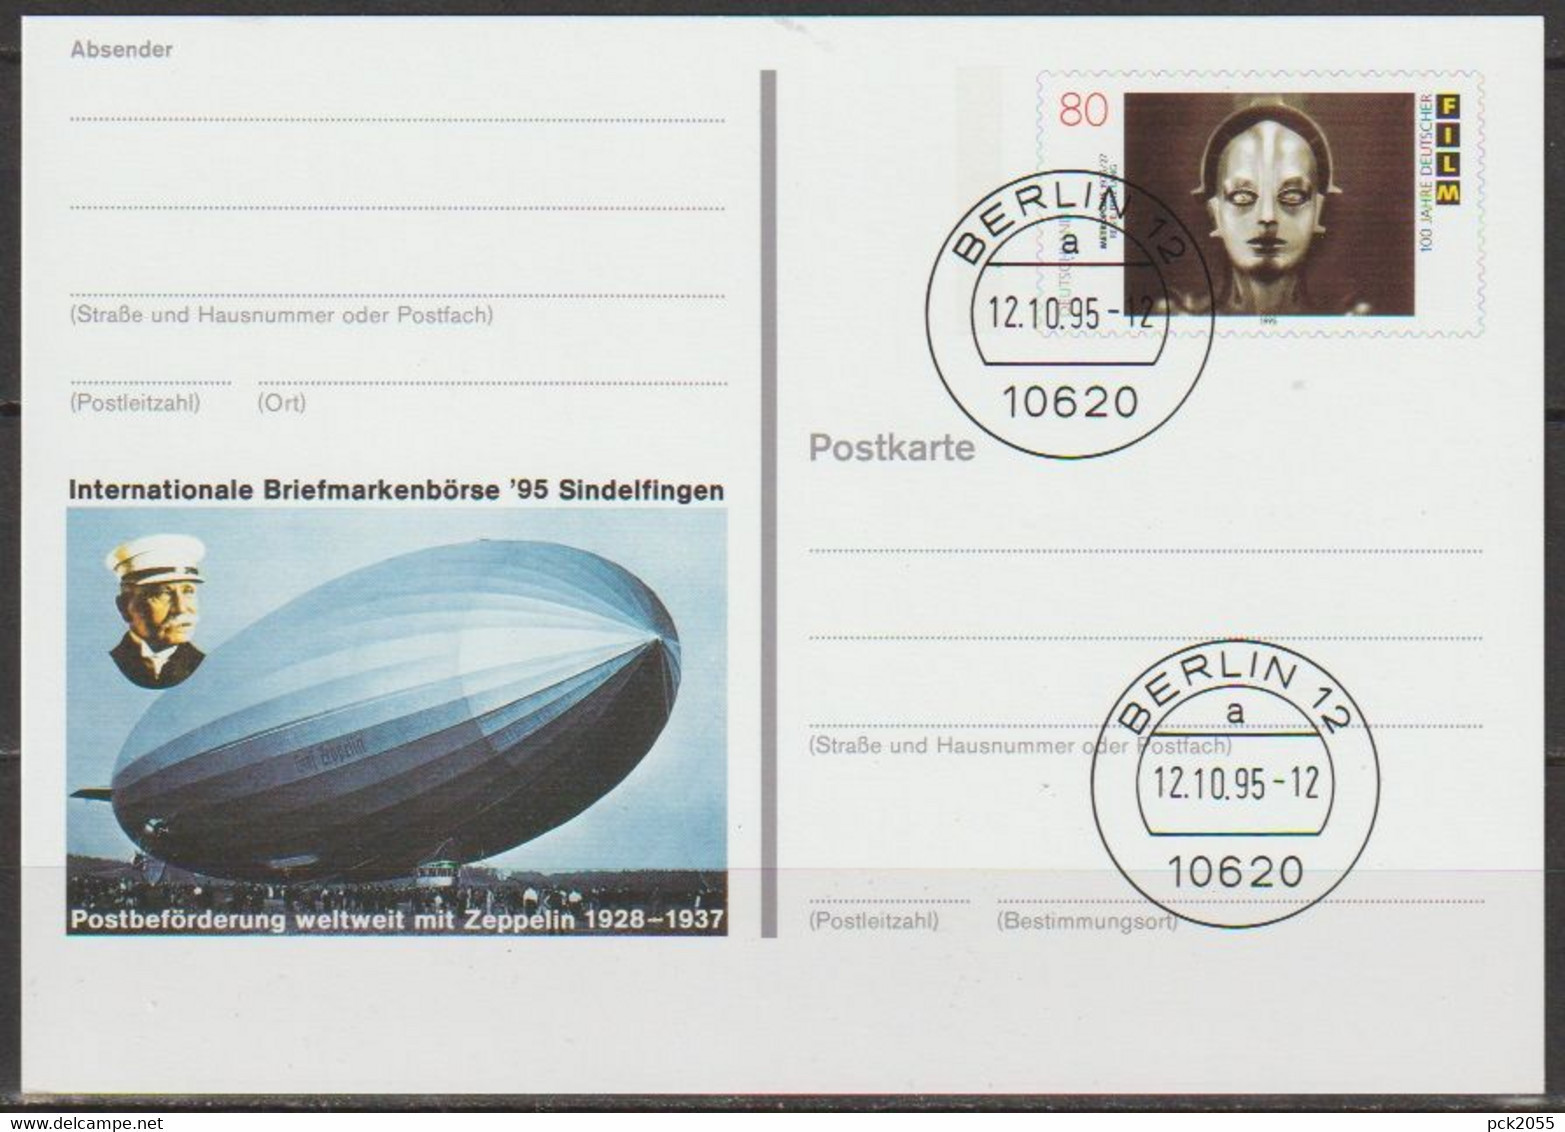 BRD Ganzsache 1995 PSo40 Briefmarkenbörse Sindelfingen Ersttagsstempel 12.10.95 Berlin  (d372)günstige Versandkosten - Postales - Usados